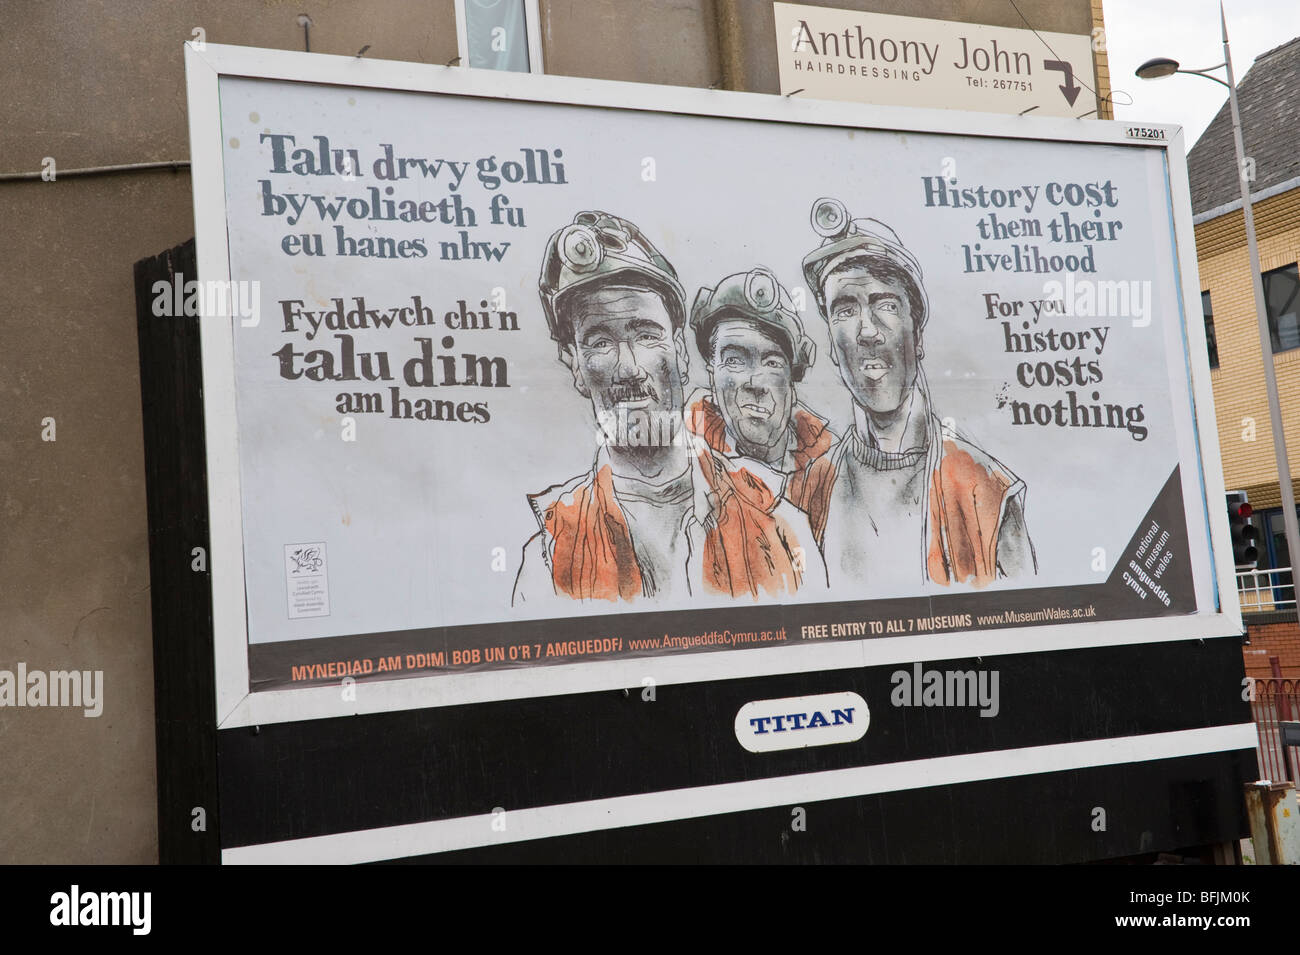 Bilingue anglais Titan gallois affiche publicité mineurs de charbon entrée gratuite à des sites National Museum of Wales Banque D'Images